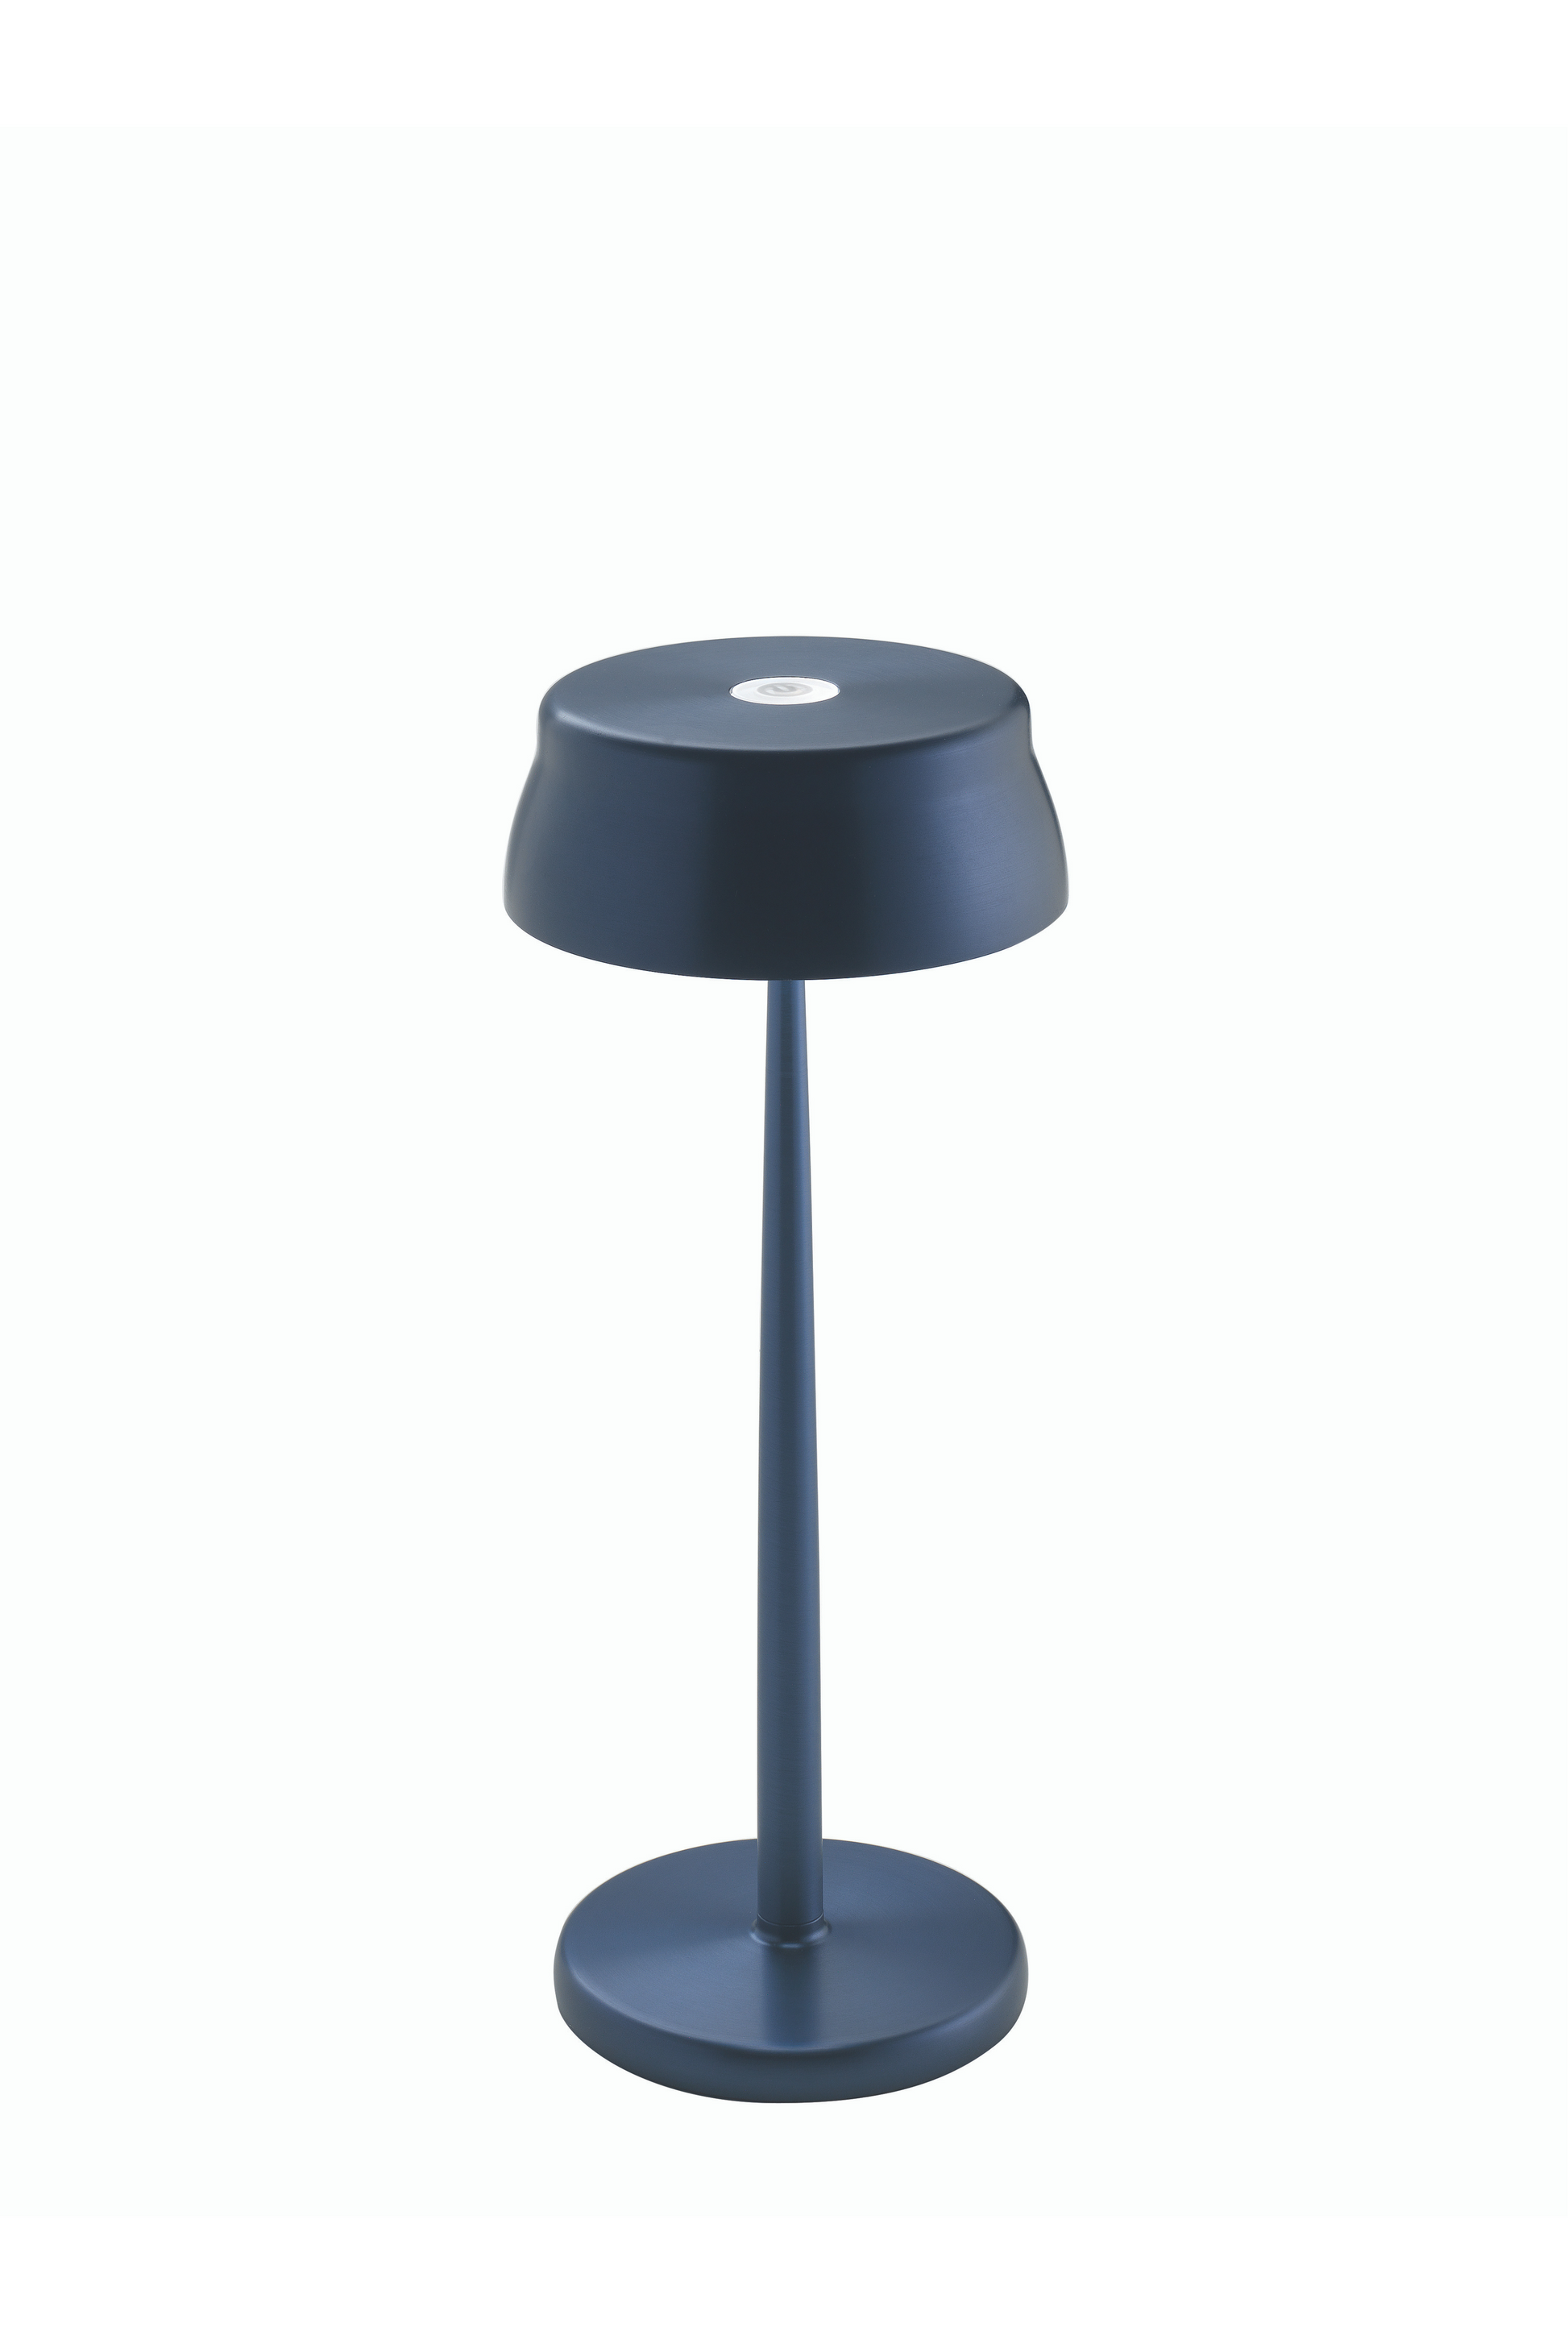 Sister Light Table Lamp [PRE-ORDER] - Fipe